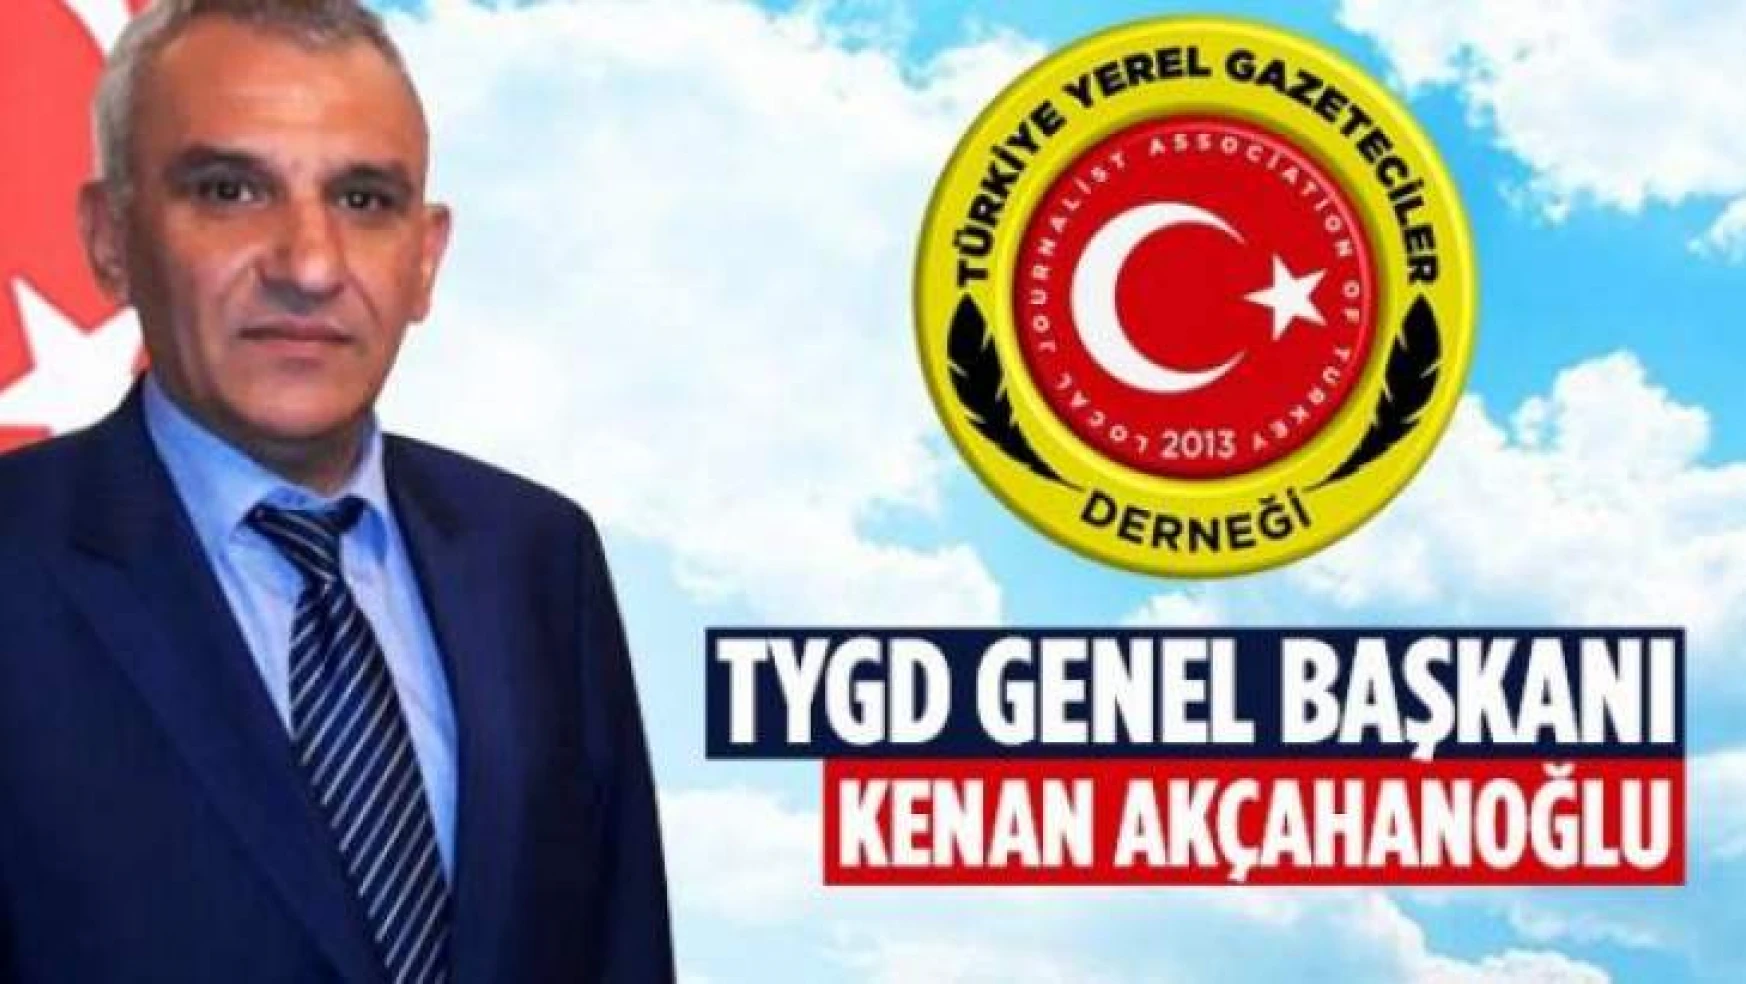 TYGD Genelbaşkanı Akçahanoğlu 3 Mayıs Türkçülük Günü Mesajı yayınladı